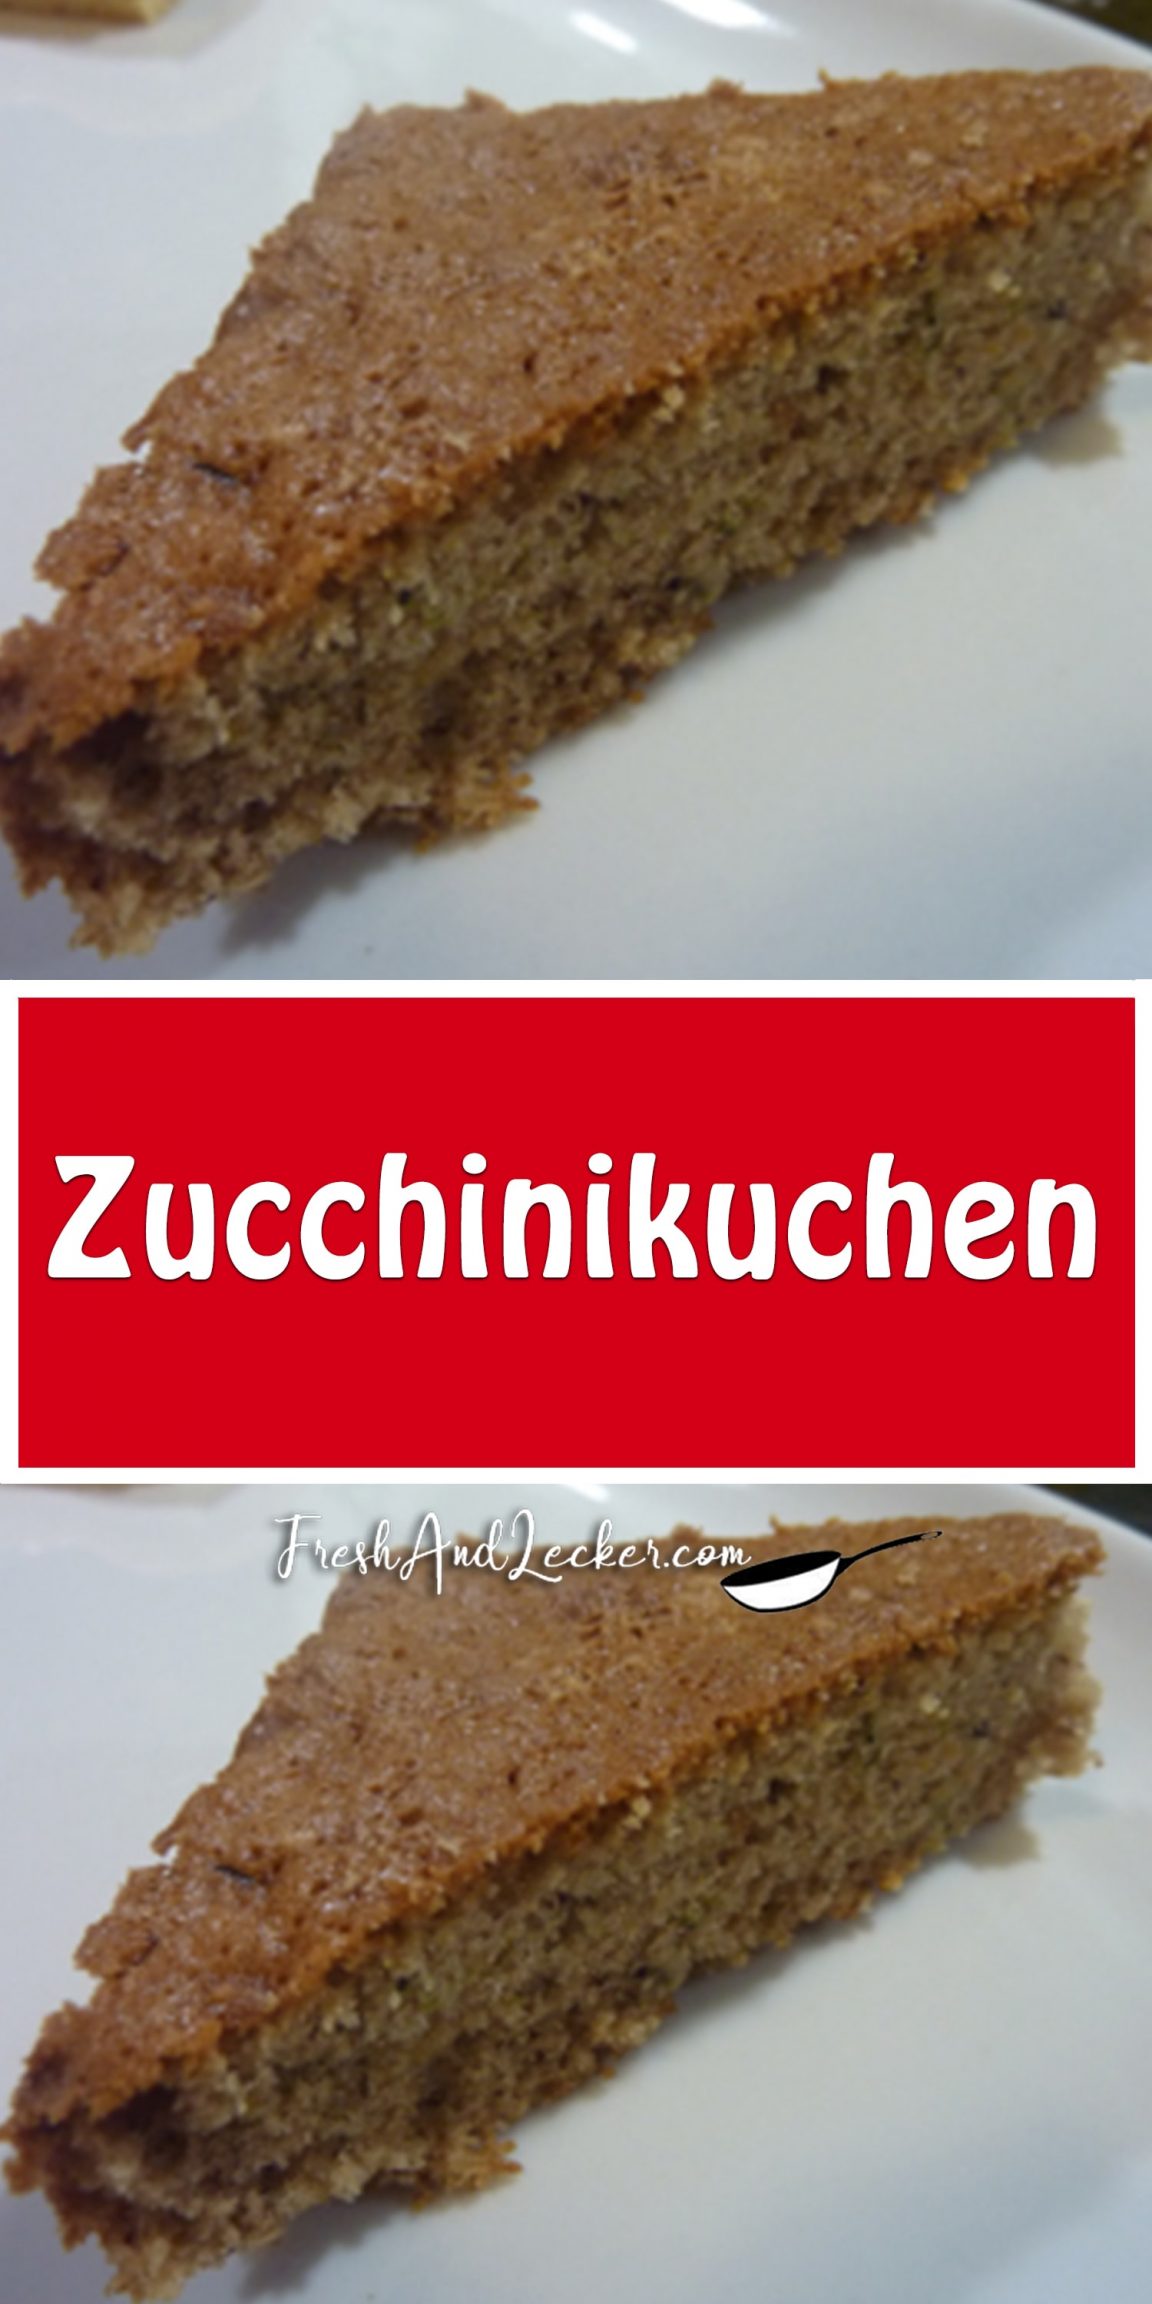 Zucchinikuchen - Fresh Lecker